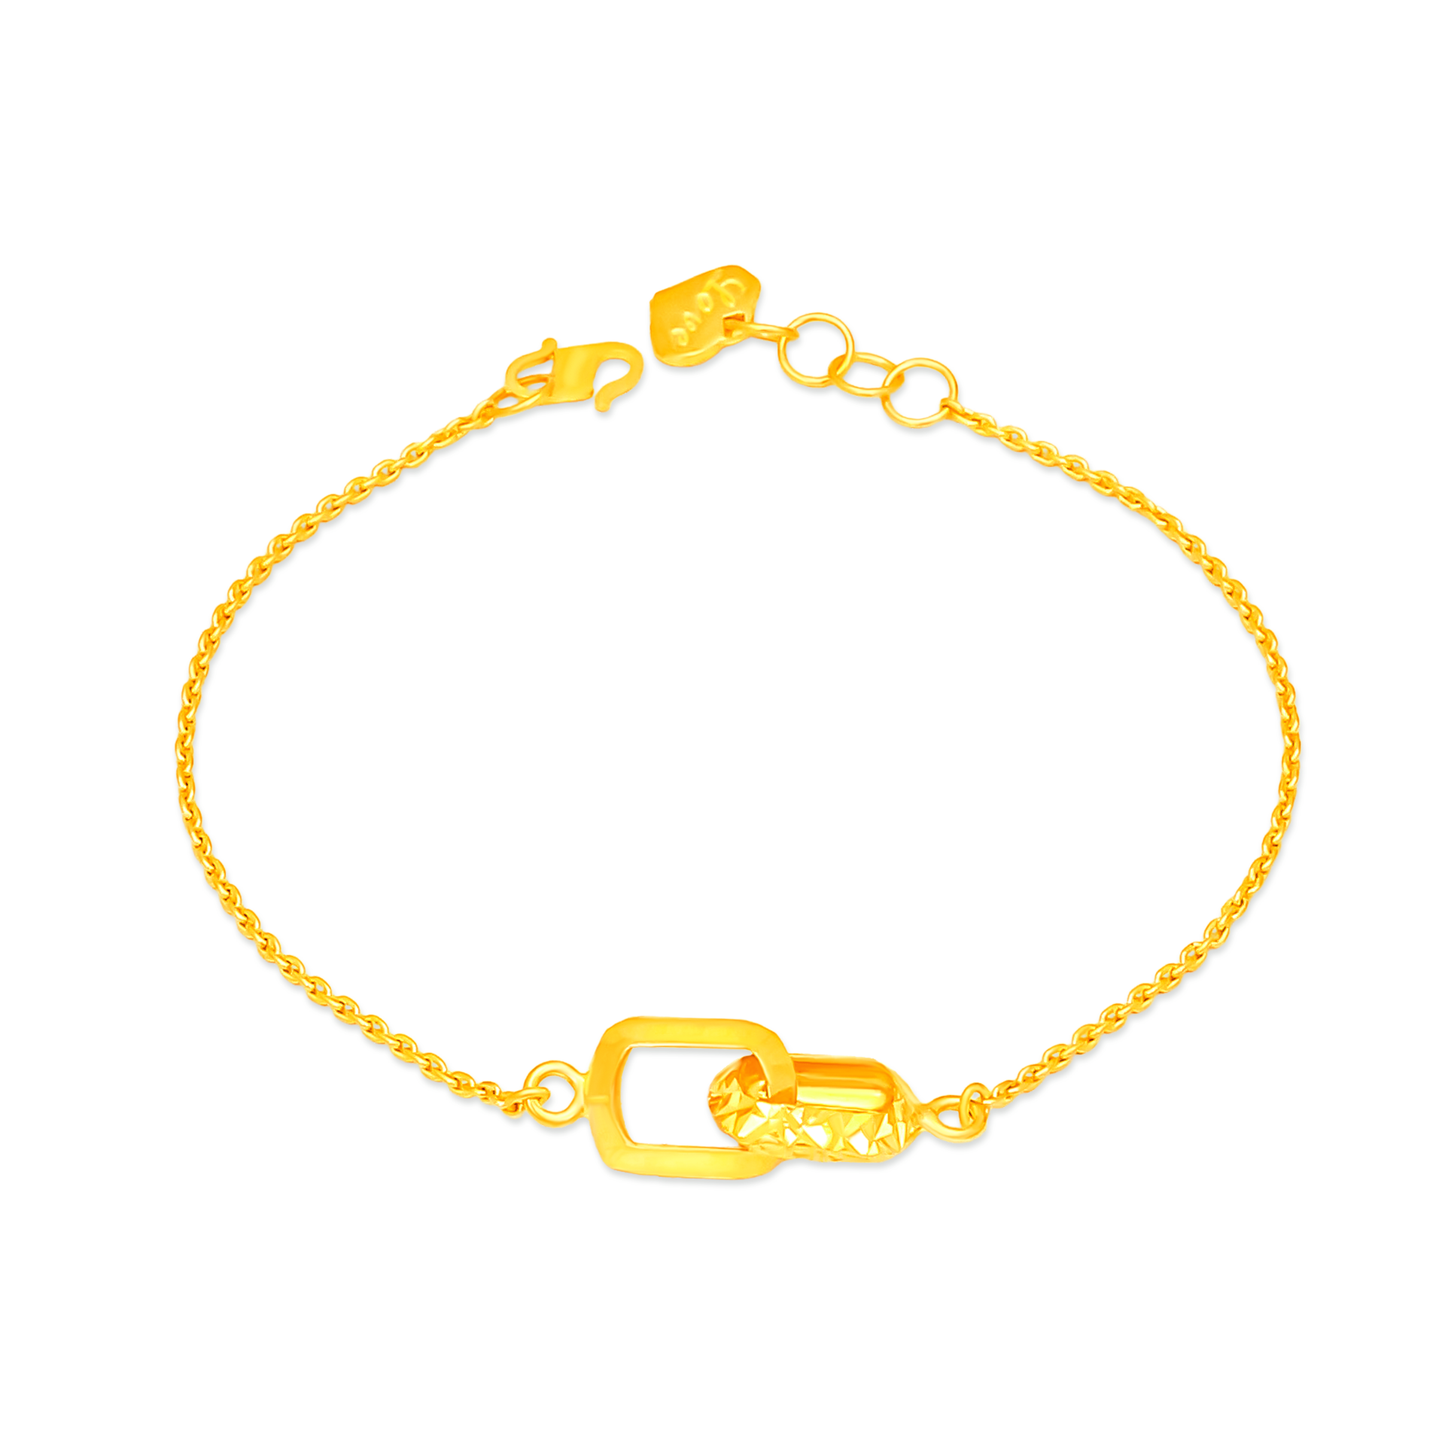 TAKA Jewellery 916 Gold Bracelet with Links - TAKA Jewellery